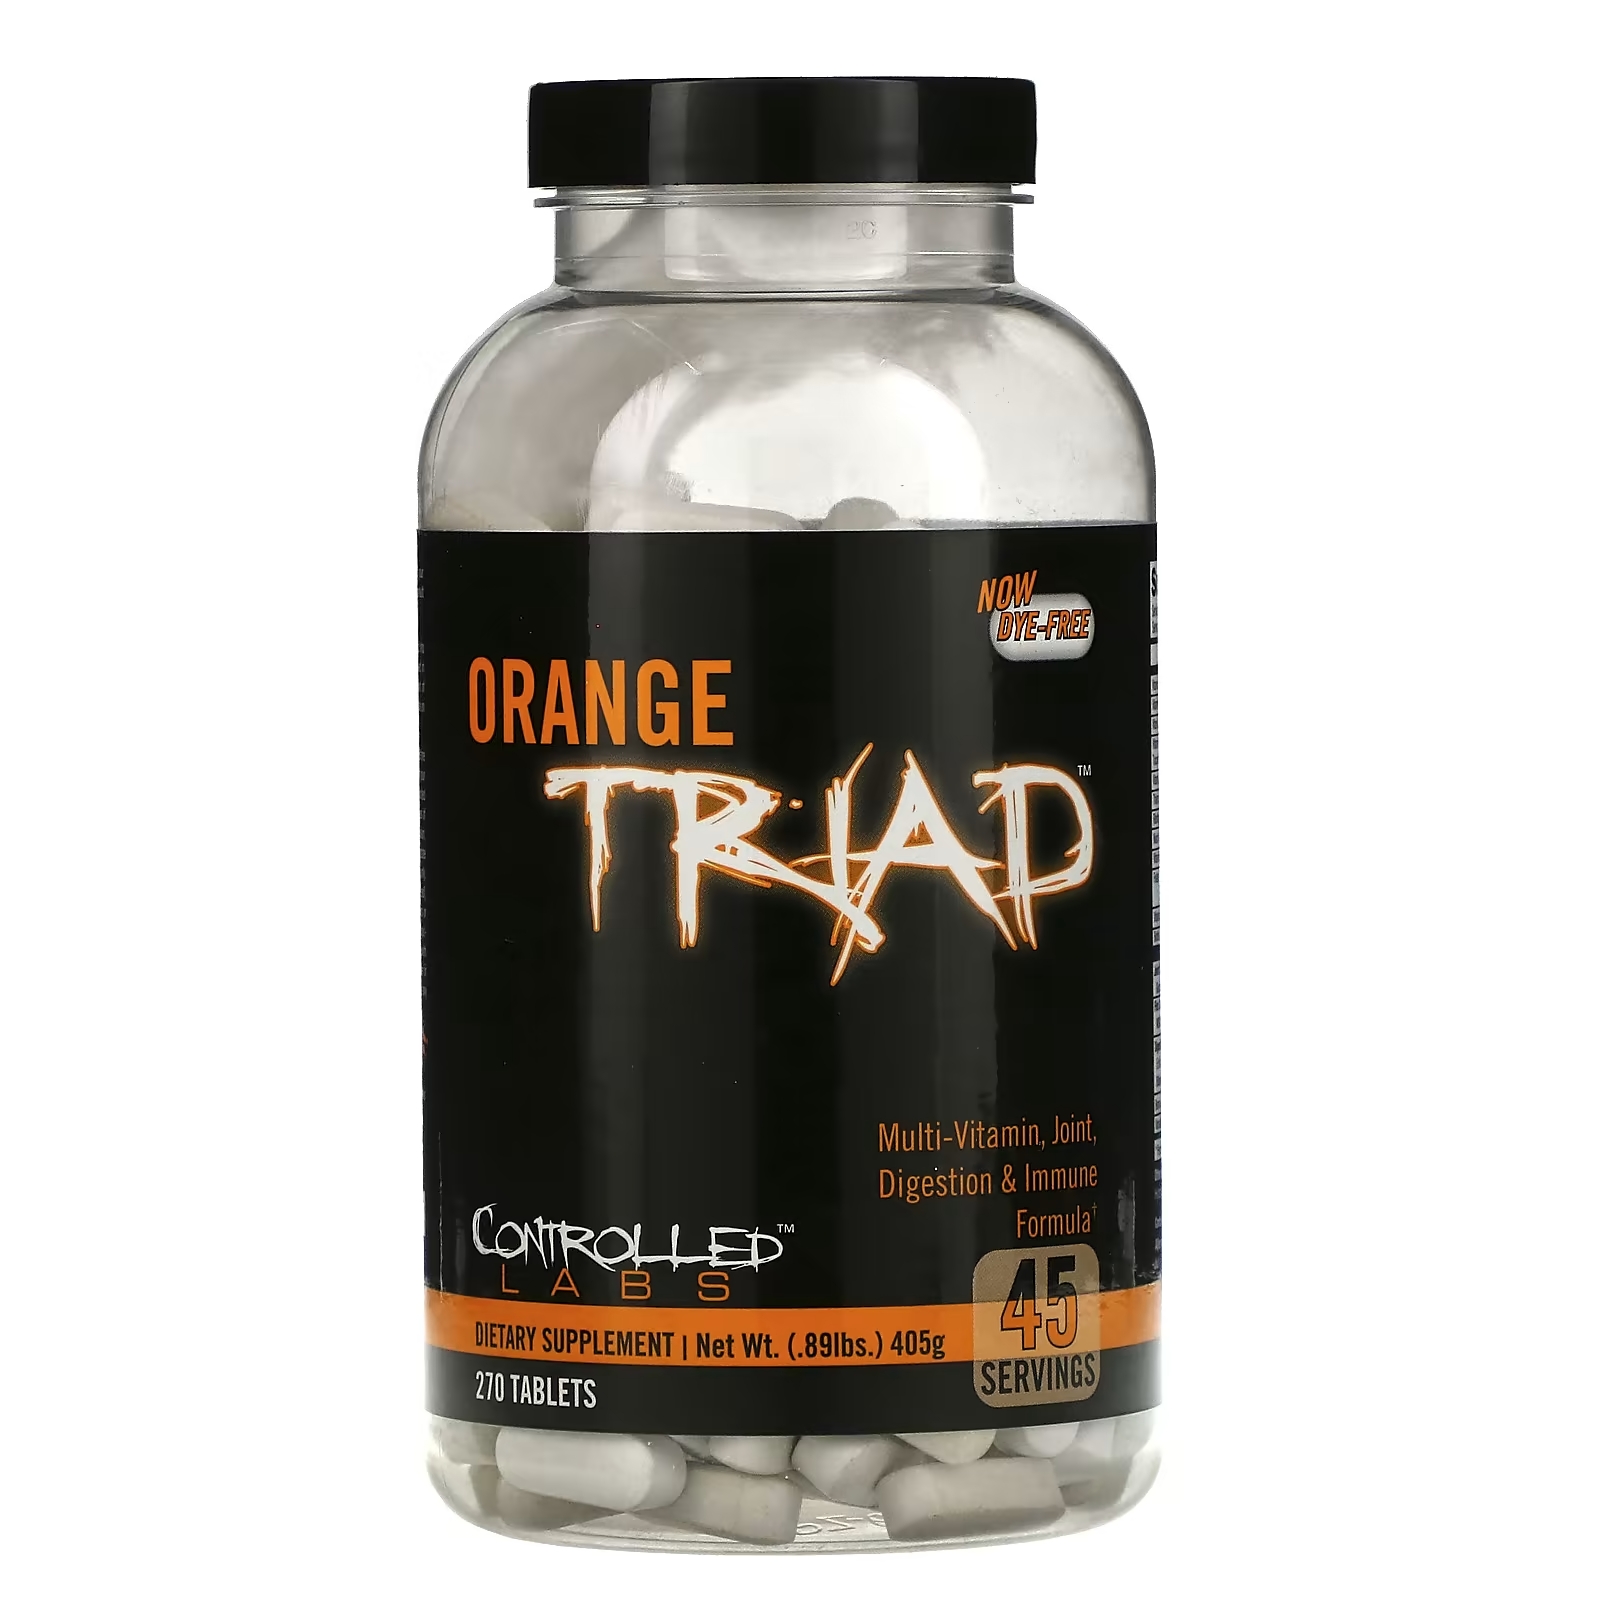 Controlled Labs Orange Triad поливитамин формула для суставов пищеварения и иммунитета, 270 таблеток